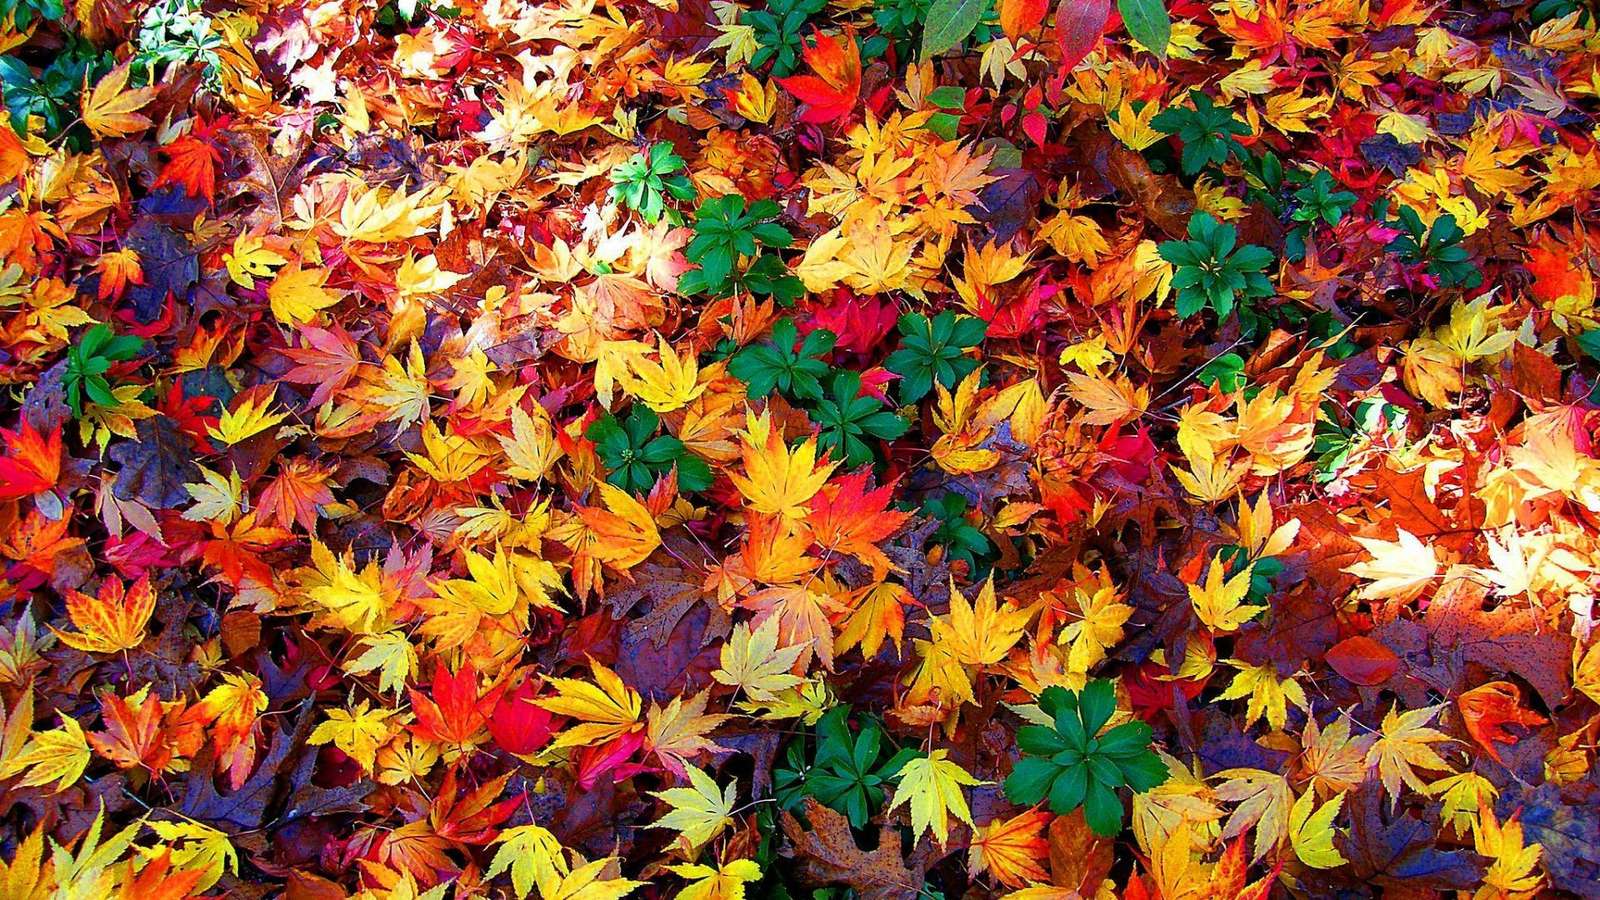 різнокольорові листя скласти пазл онлайн з фото